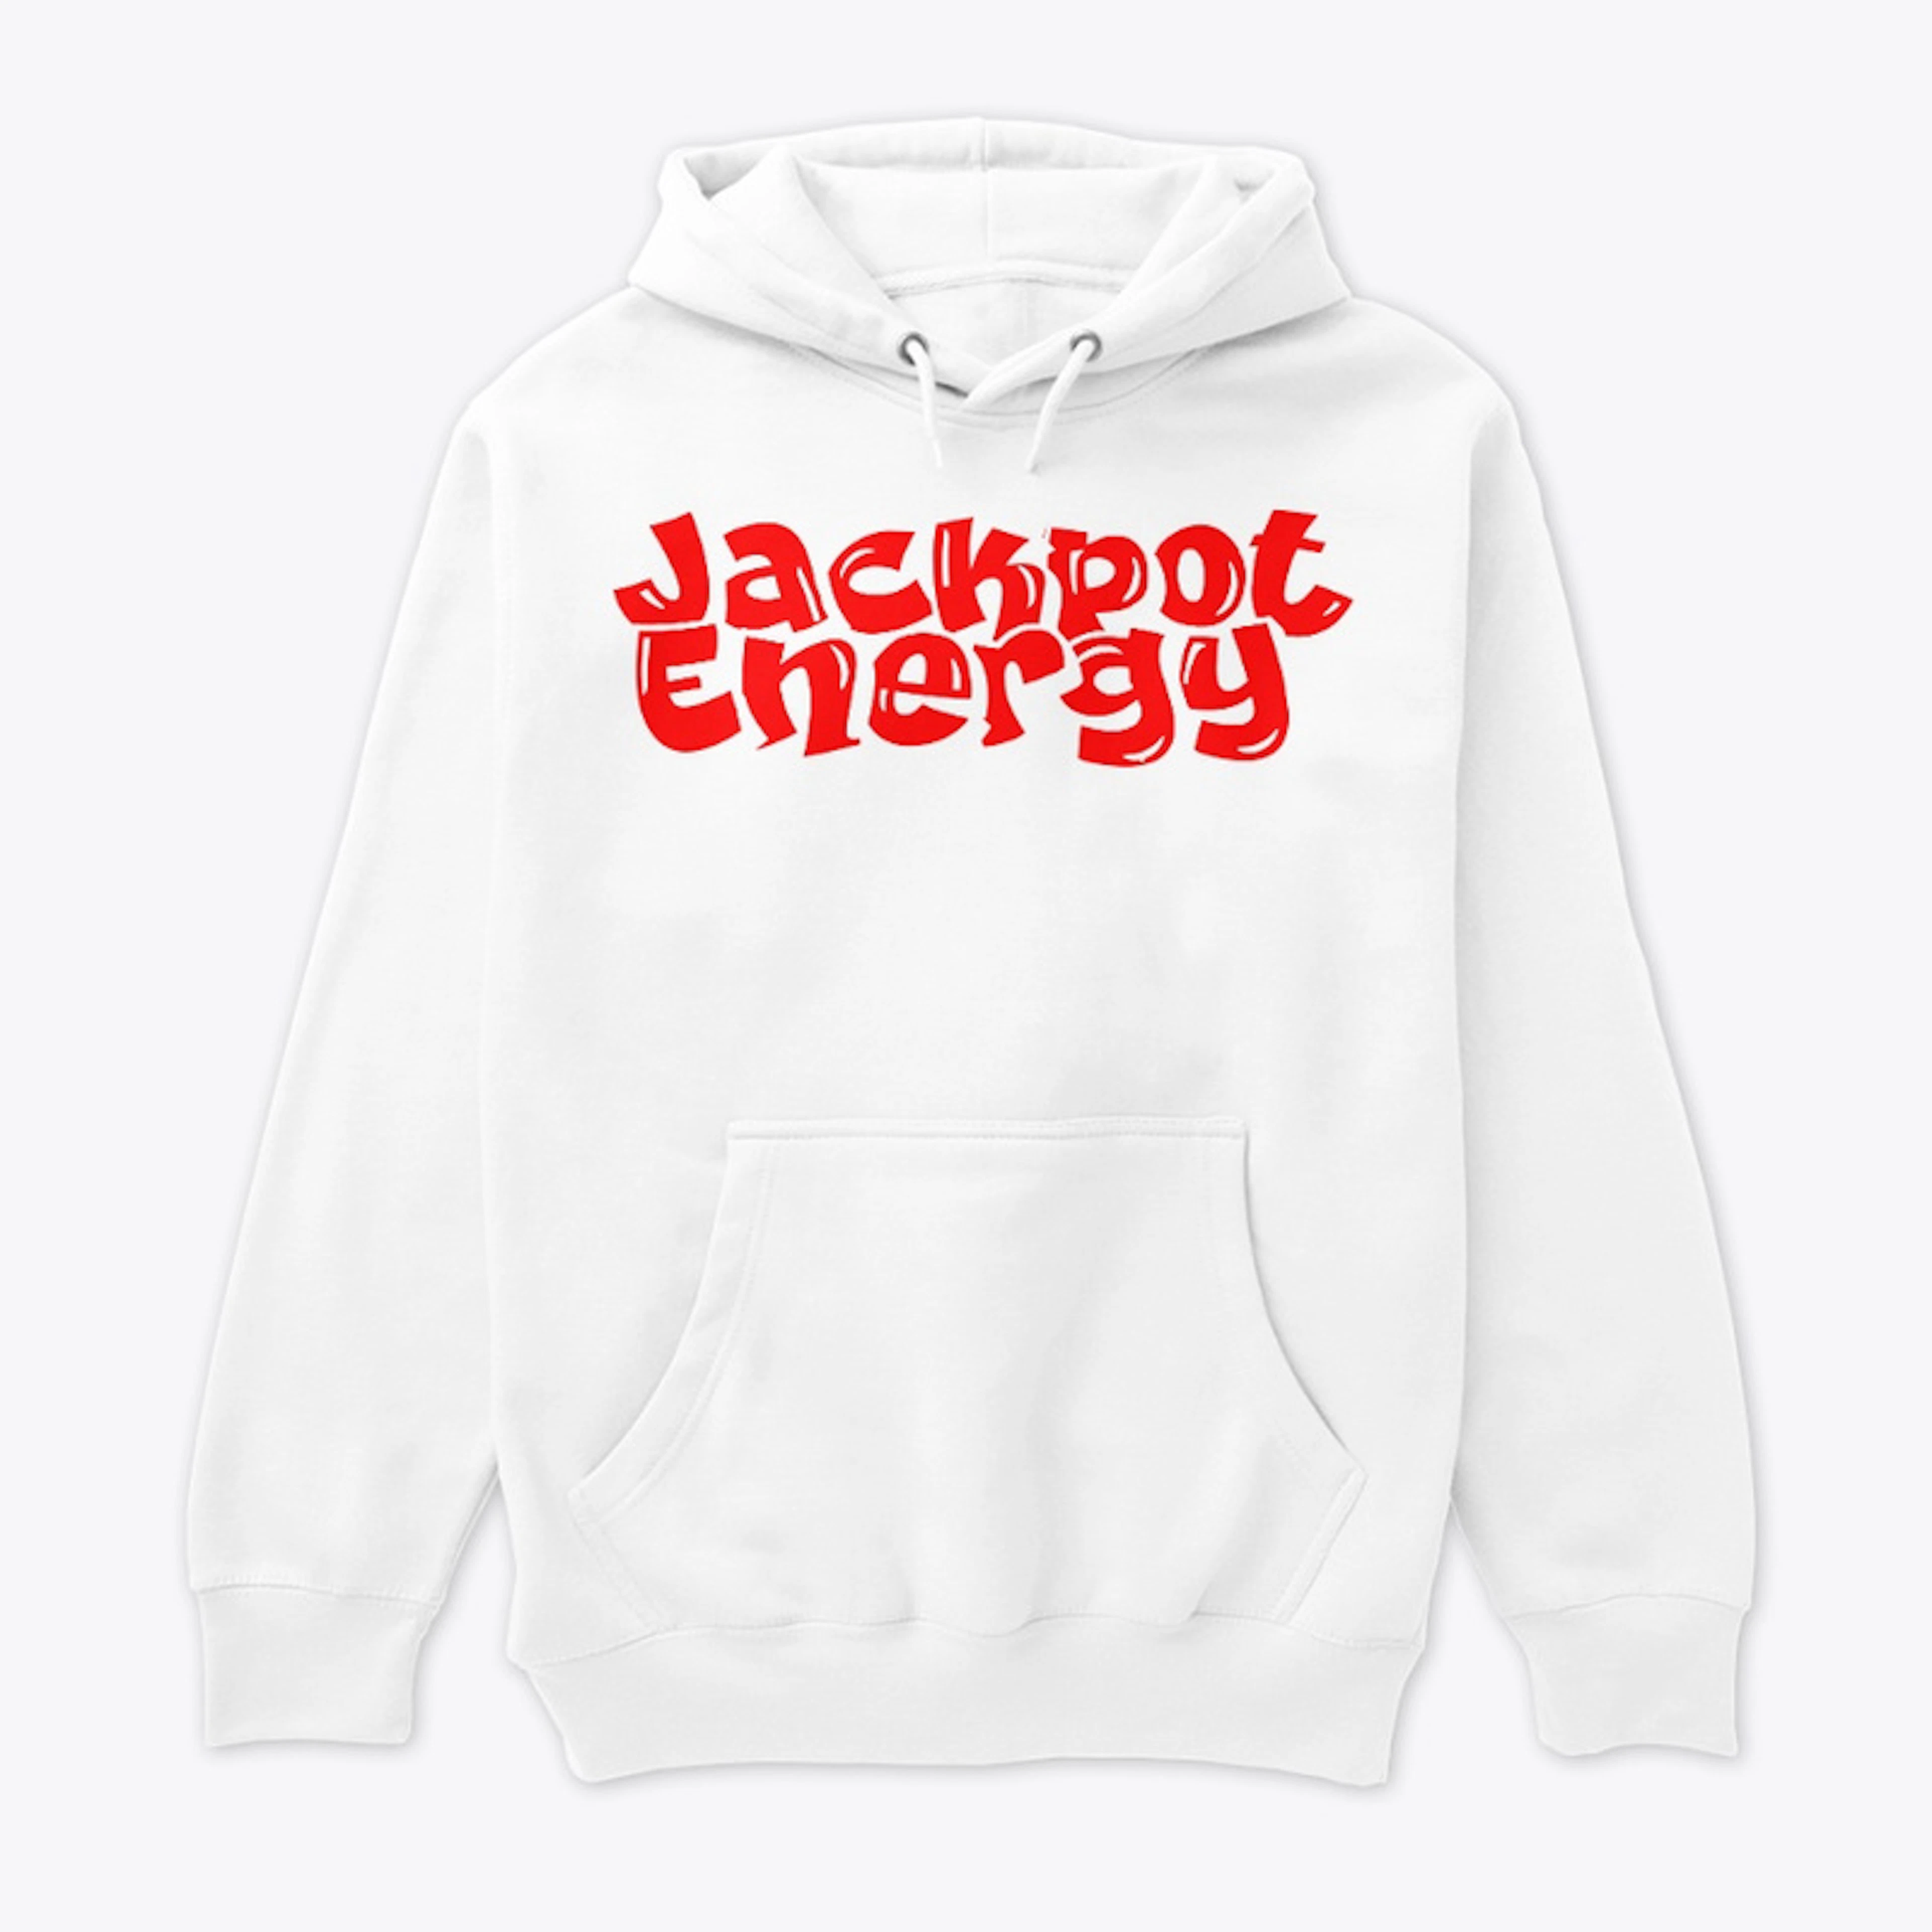 Jackpot Energy